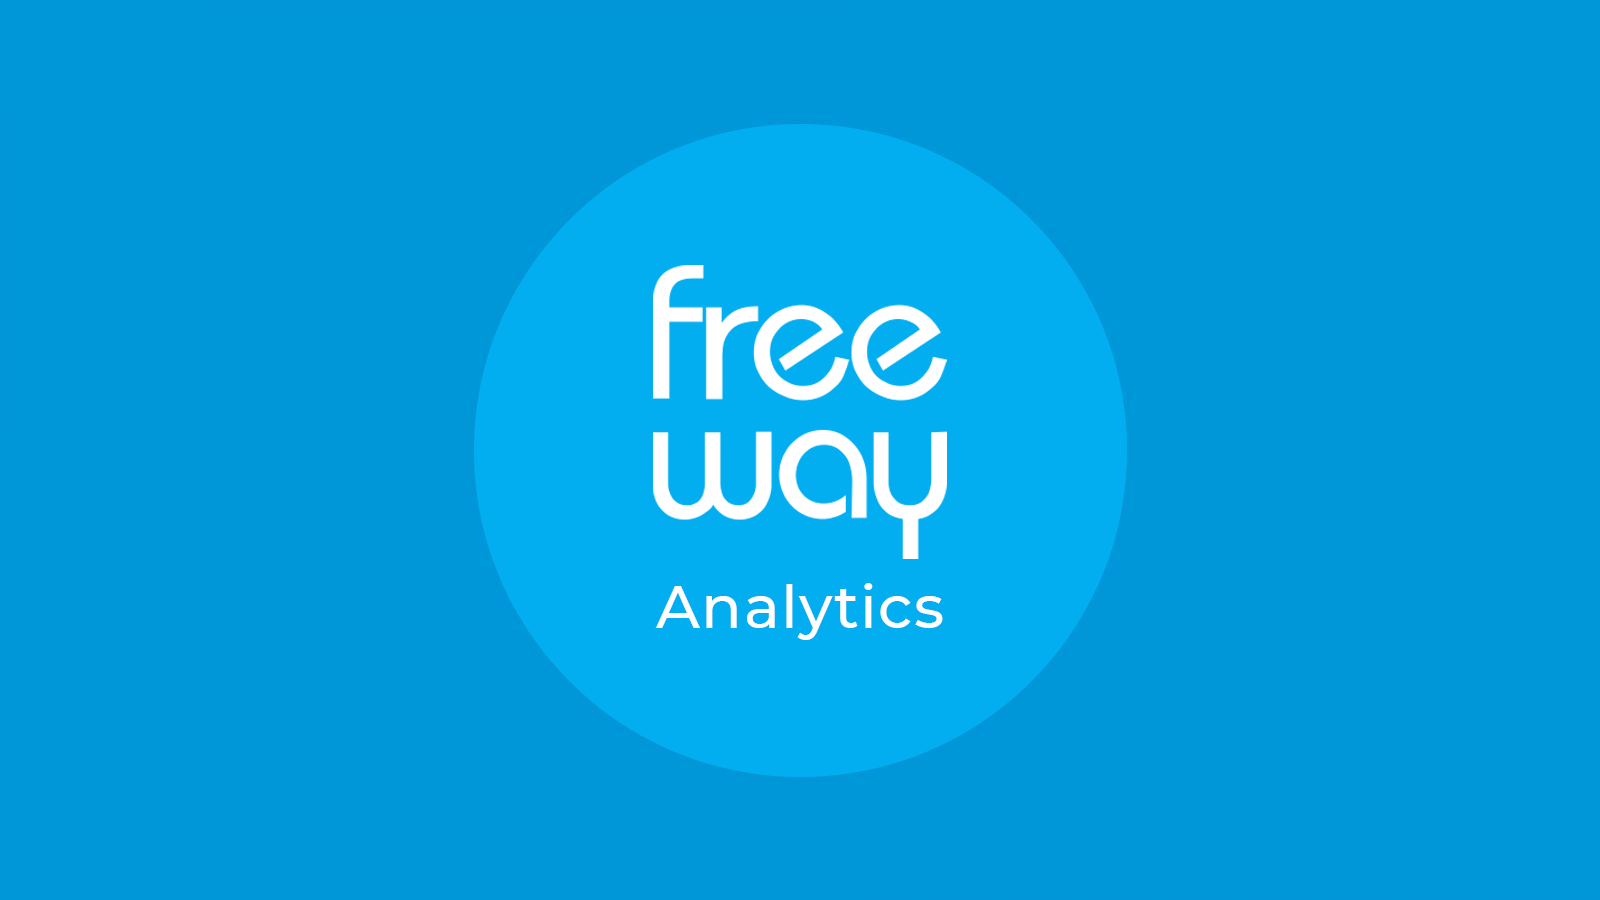 Free-Way Analytics